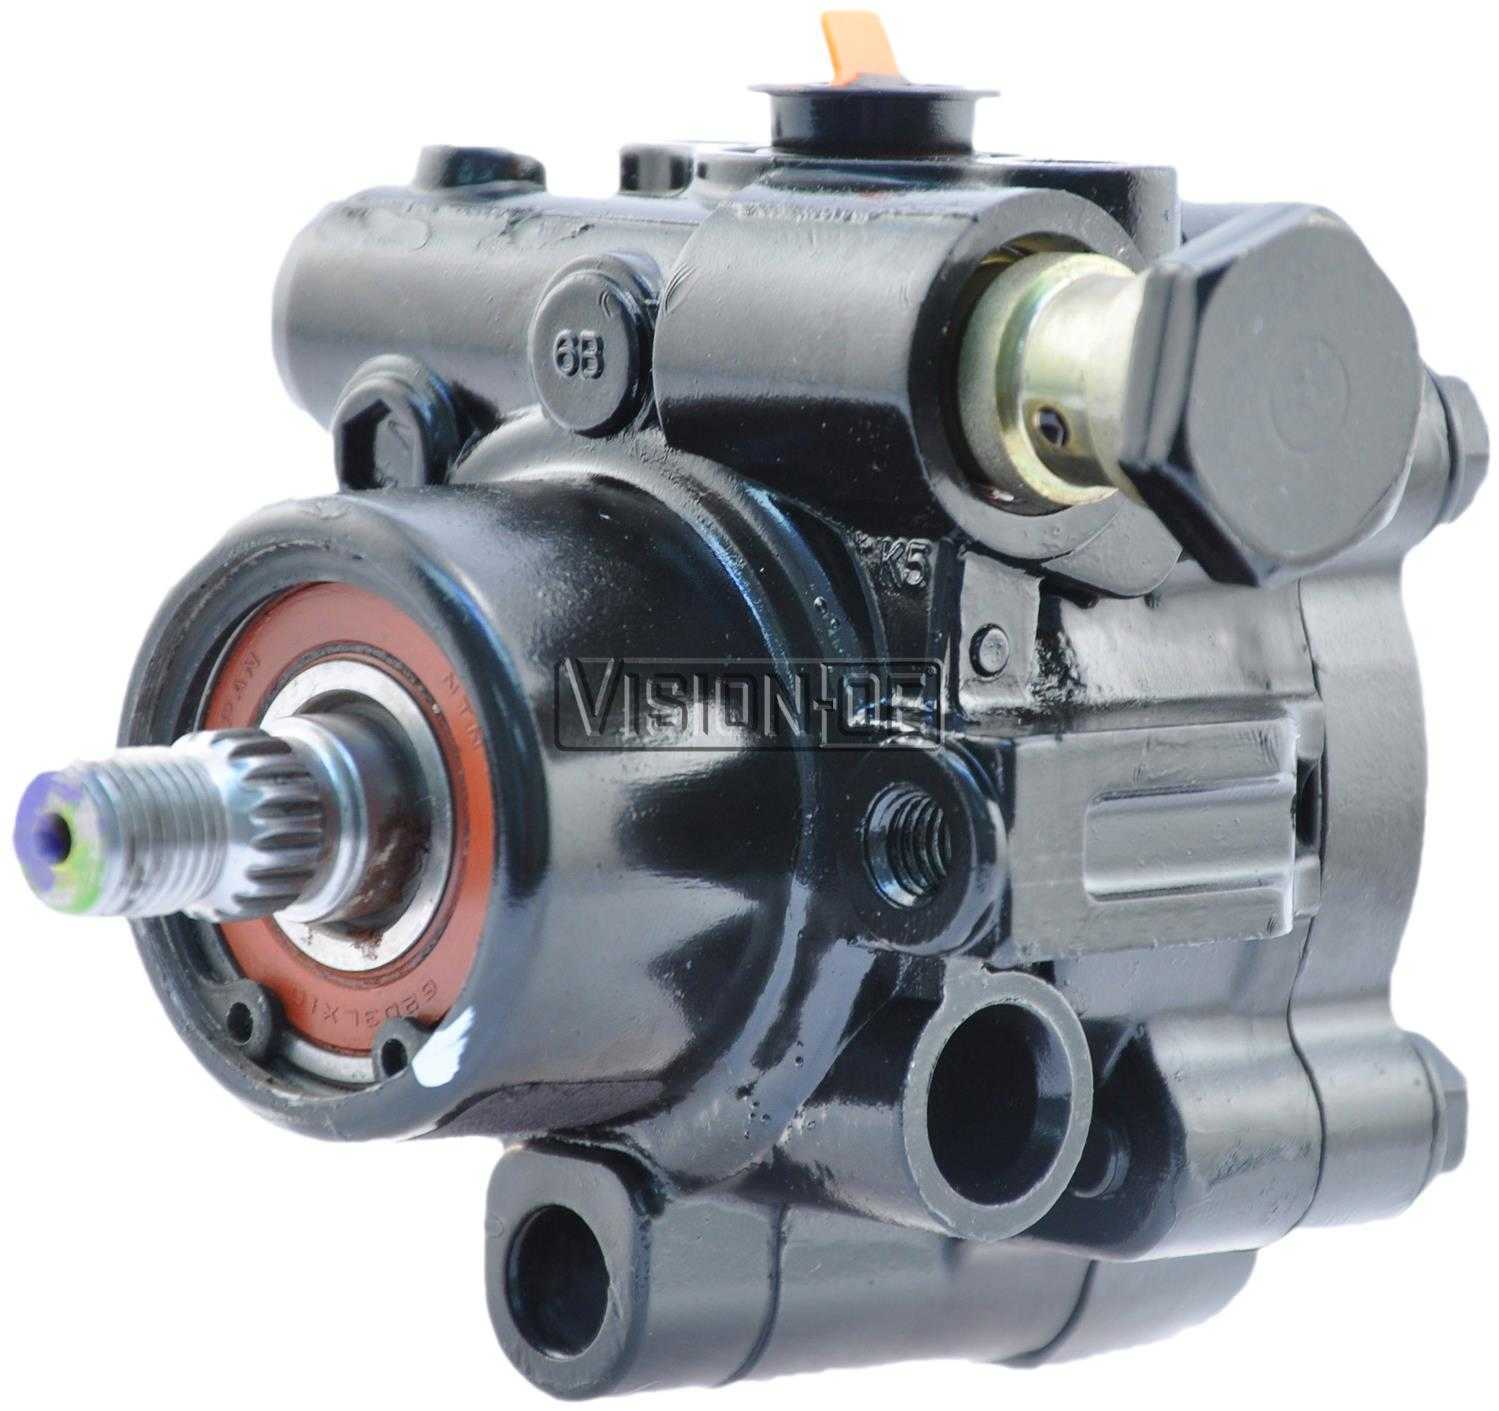 VISION-OE - Reman Power Steering Pump - VOE 990-0742